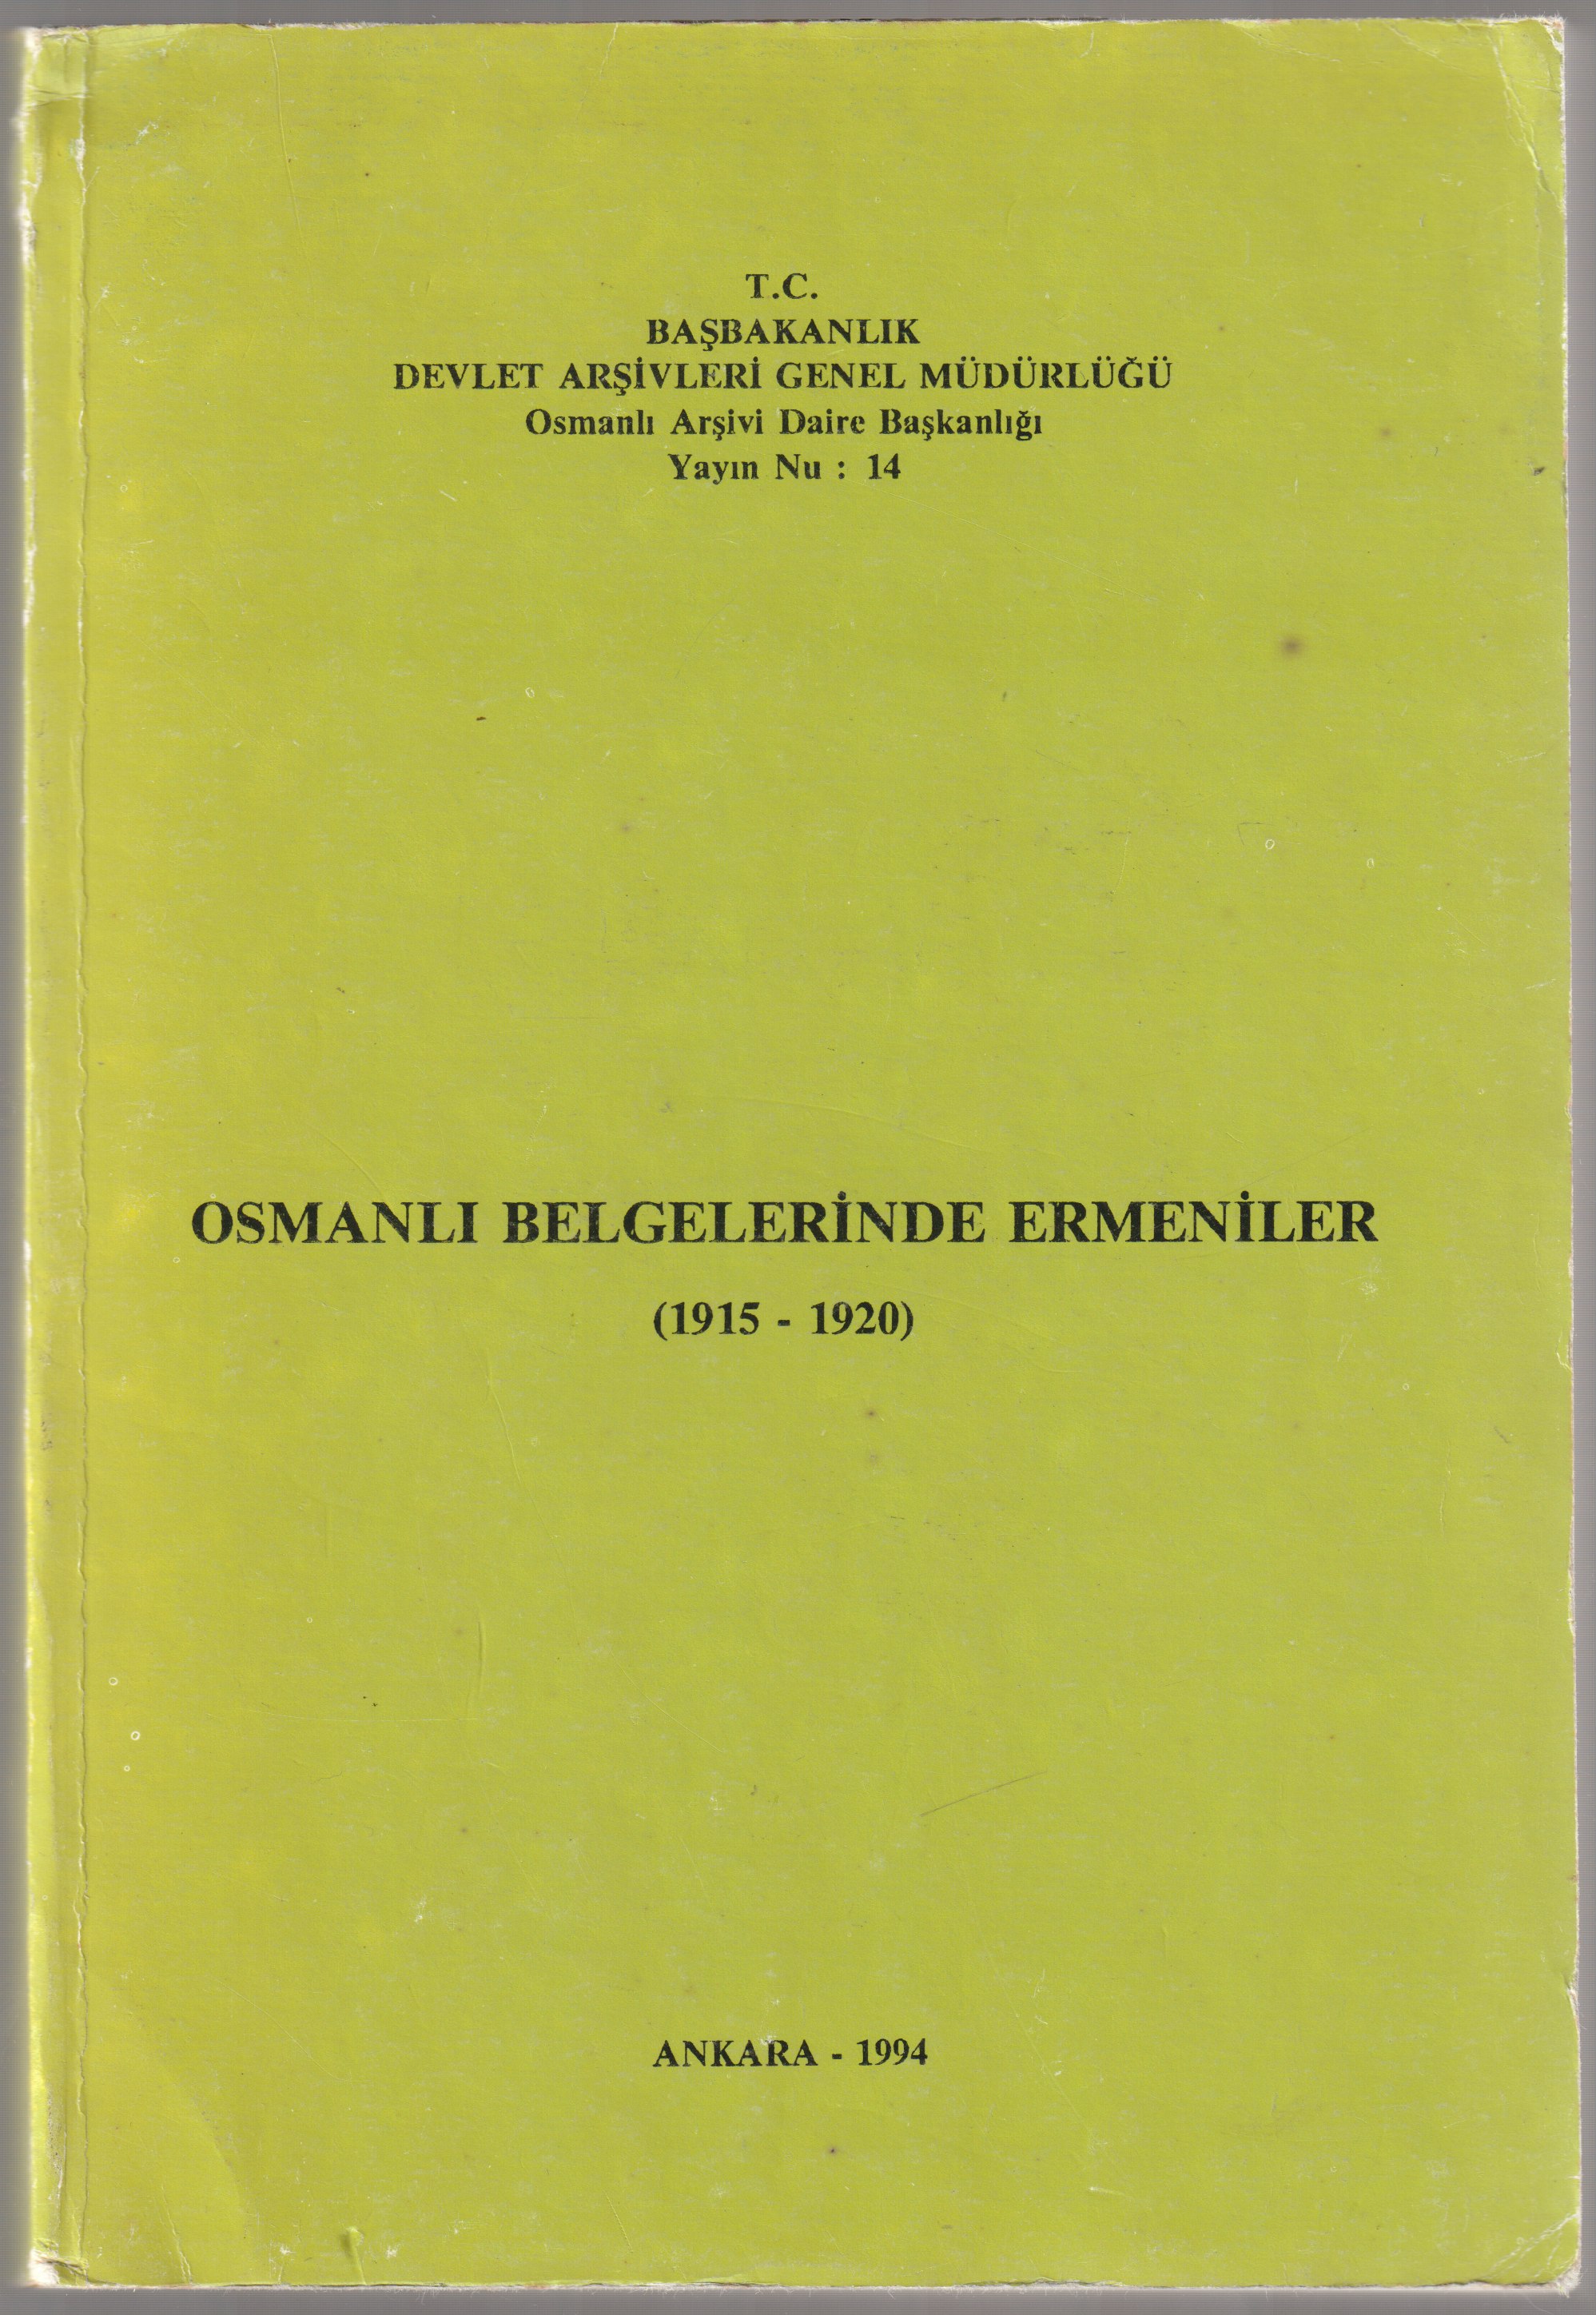 Osmanli belgelerinde Ermeniler, 1915-1920